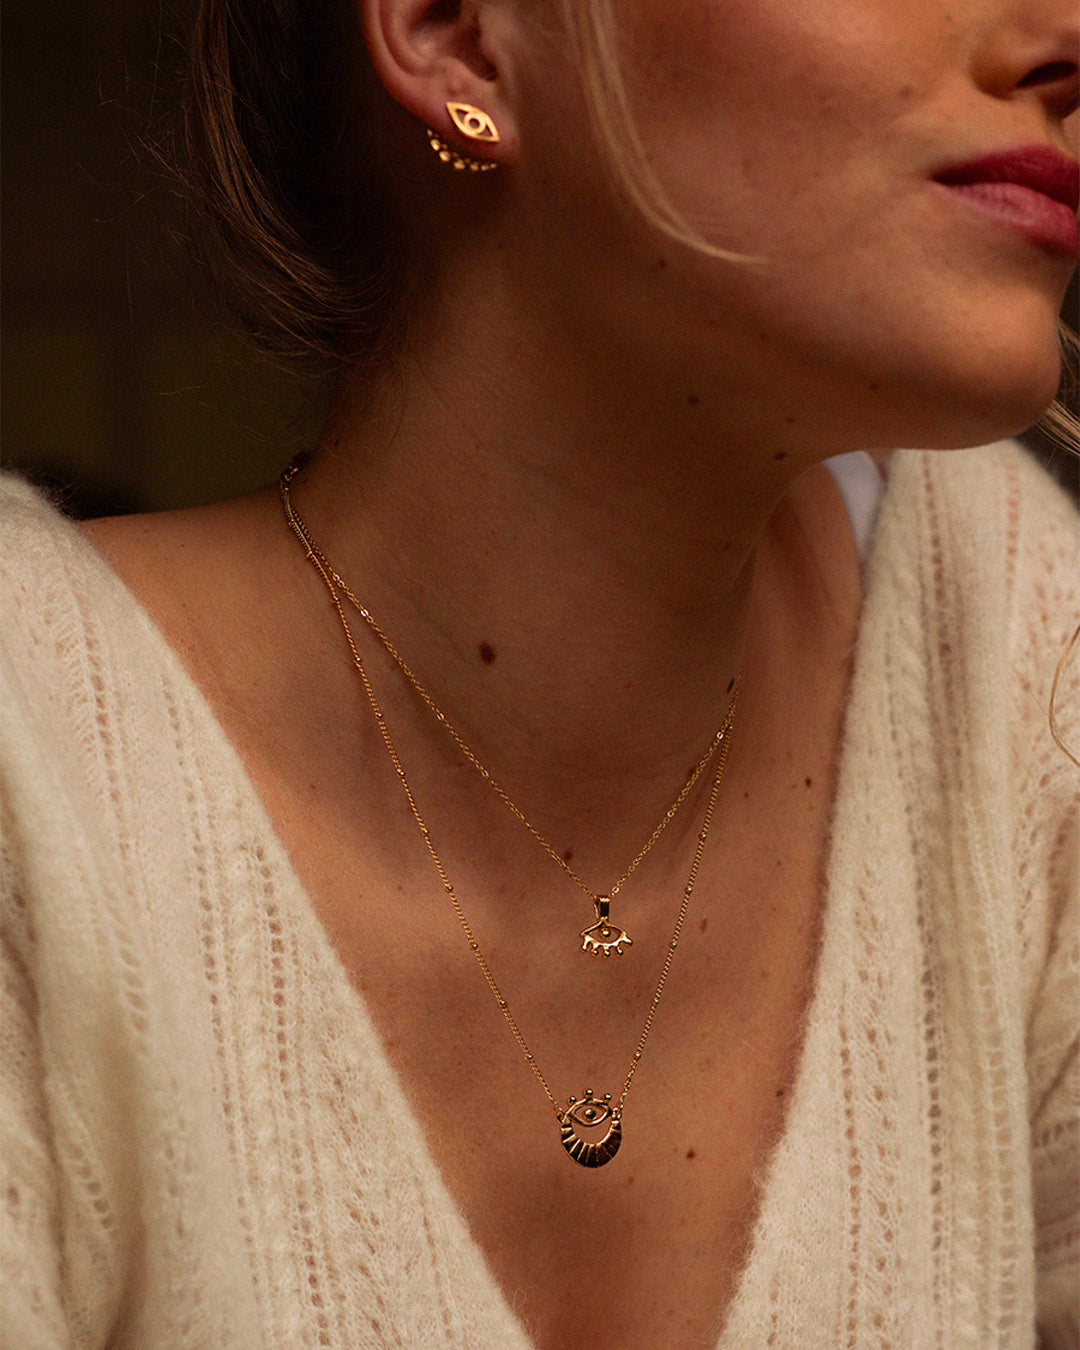 Association de bijoux éthiques composée de 2 colliers fin avec un pendentif en forme de 3ème œil en plaqué or 3 microns fabriqués en France.